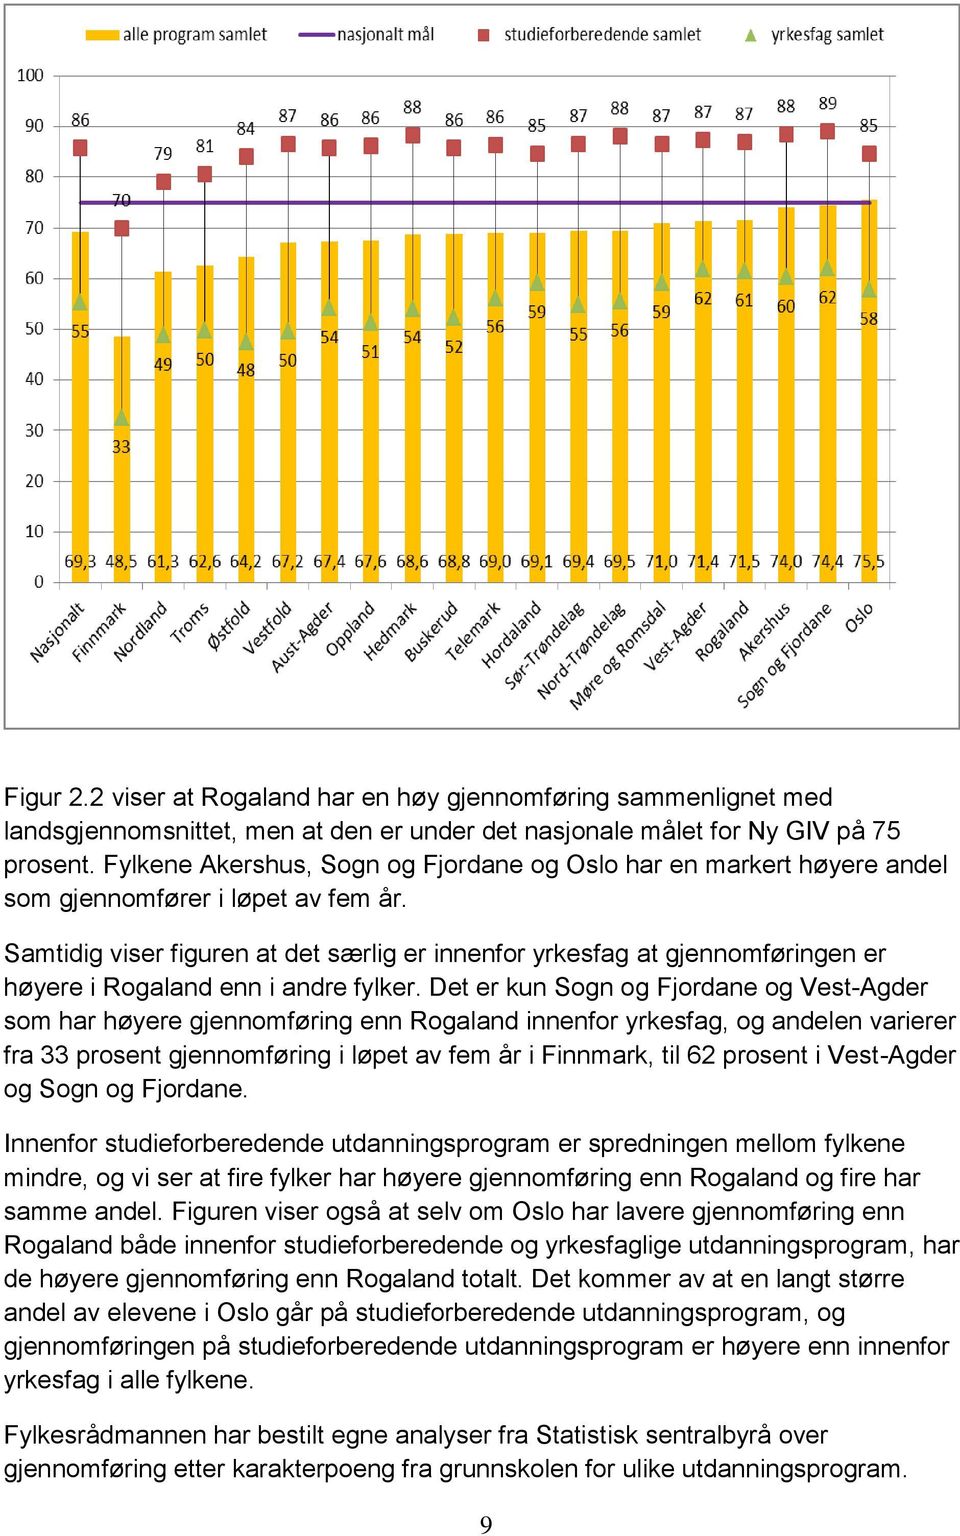 Samtidig viser figuren at det særlig er innenfor yrkesfag at gjennomføringen er høyere i Rogaland enn i andre fylker.